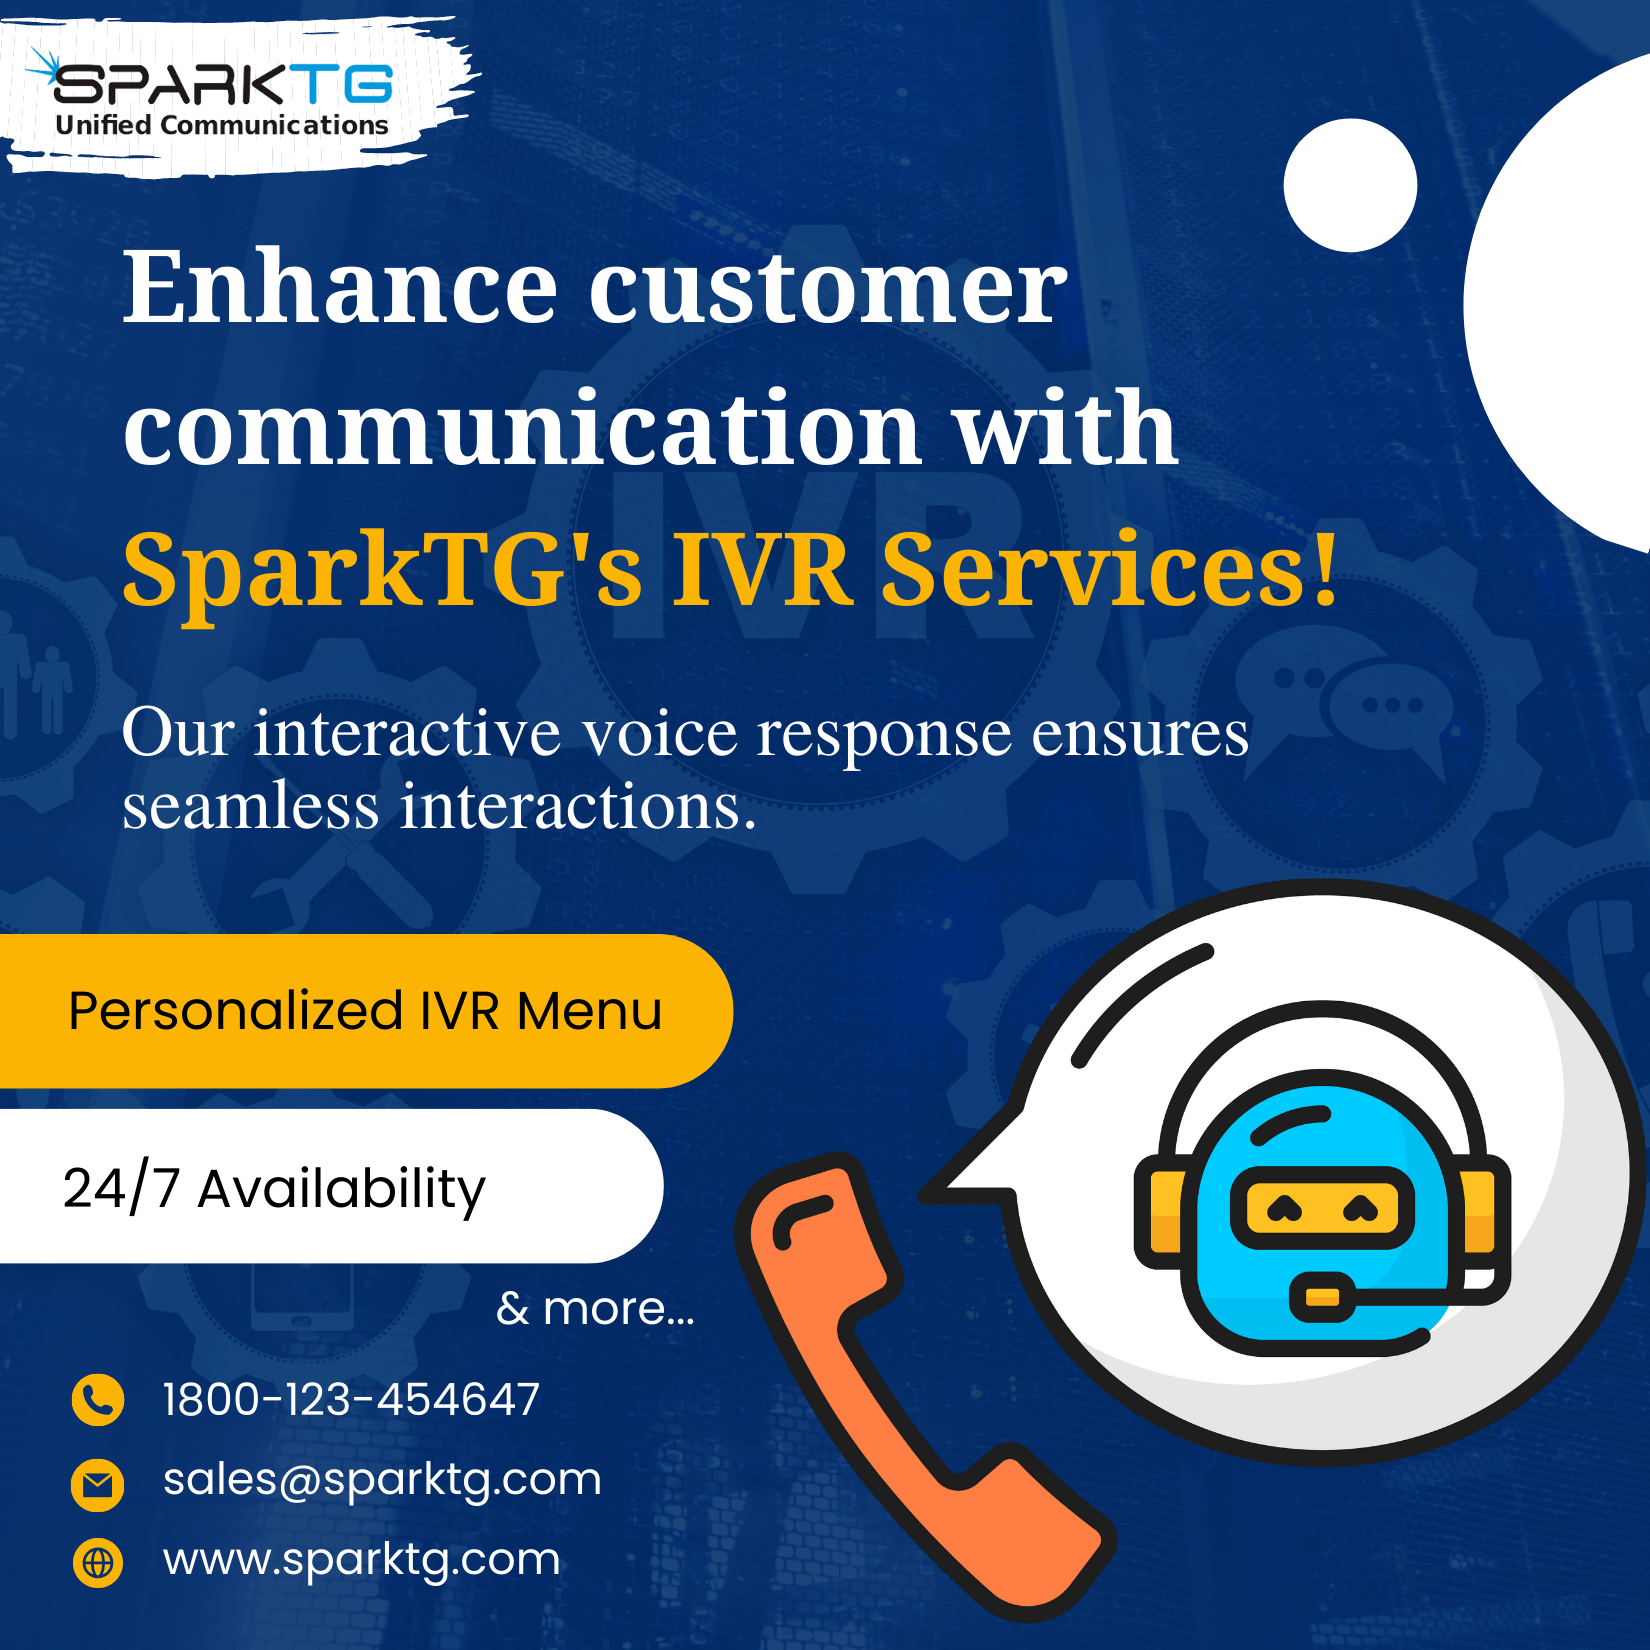 IVR Services - SparkTG